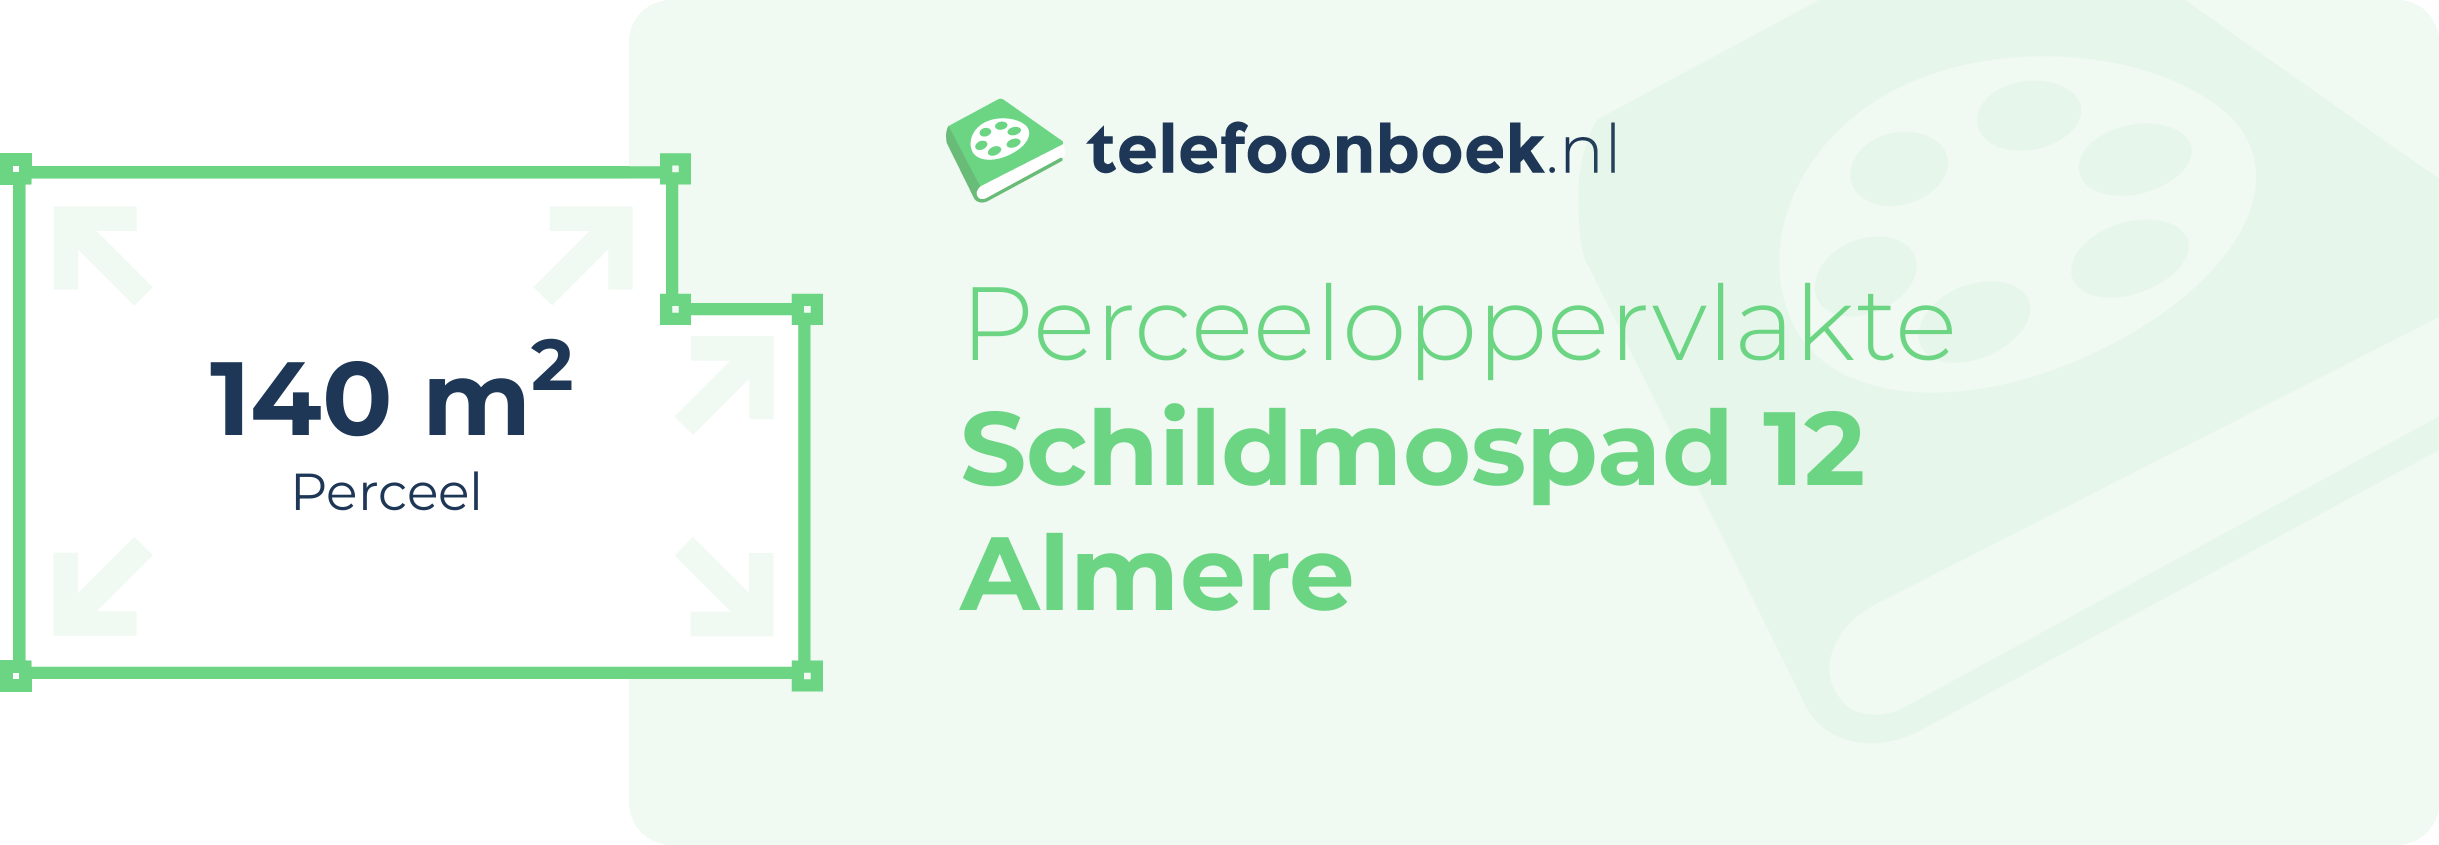 Perceeloppervlakte Schildmospad 12 Almere